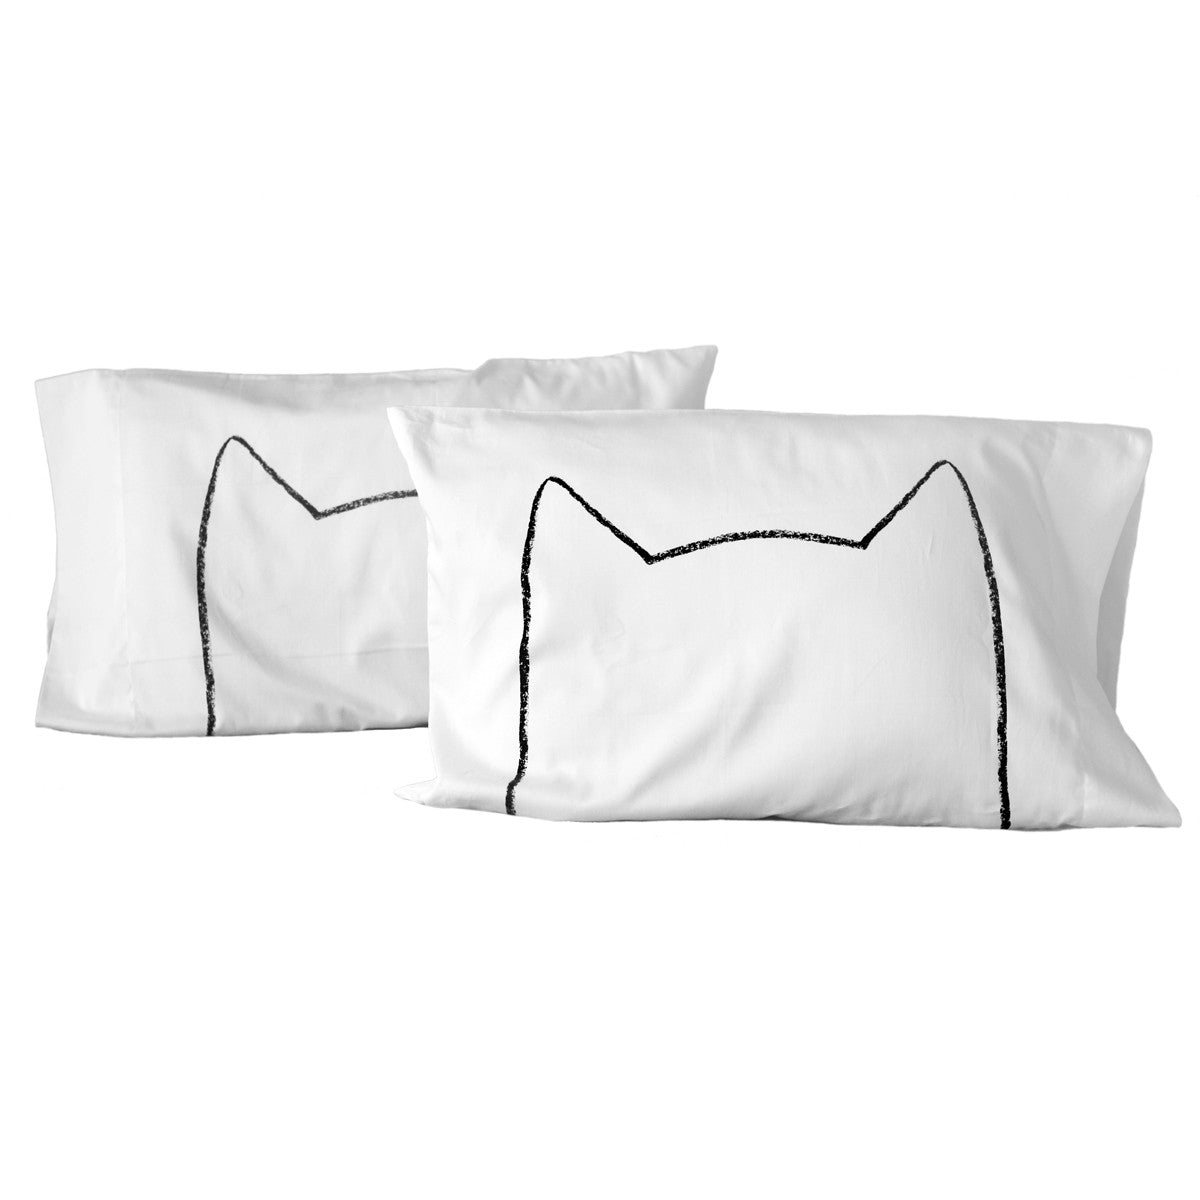 Xenotees Just A Little Cat Nap Pillowcase Set